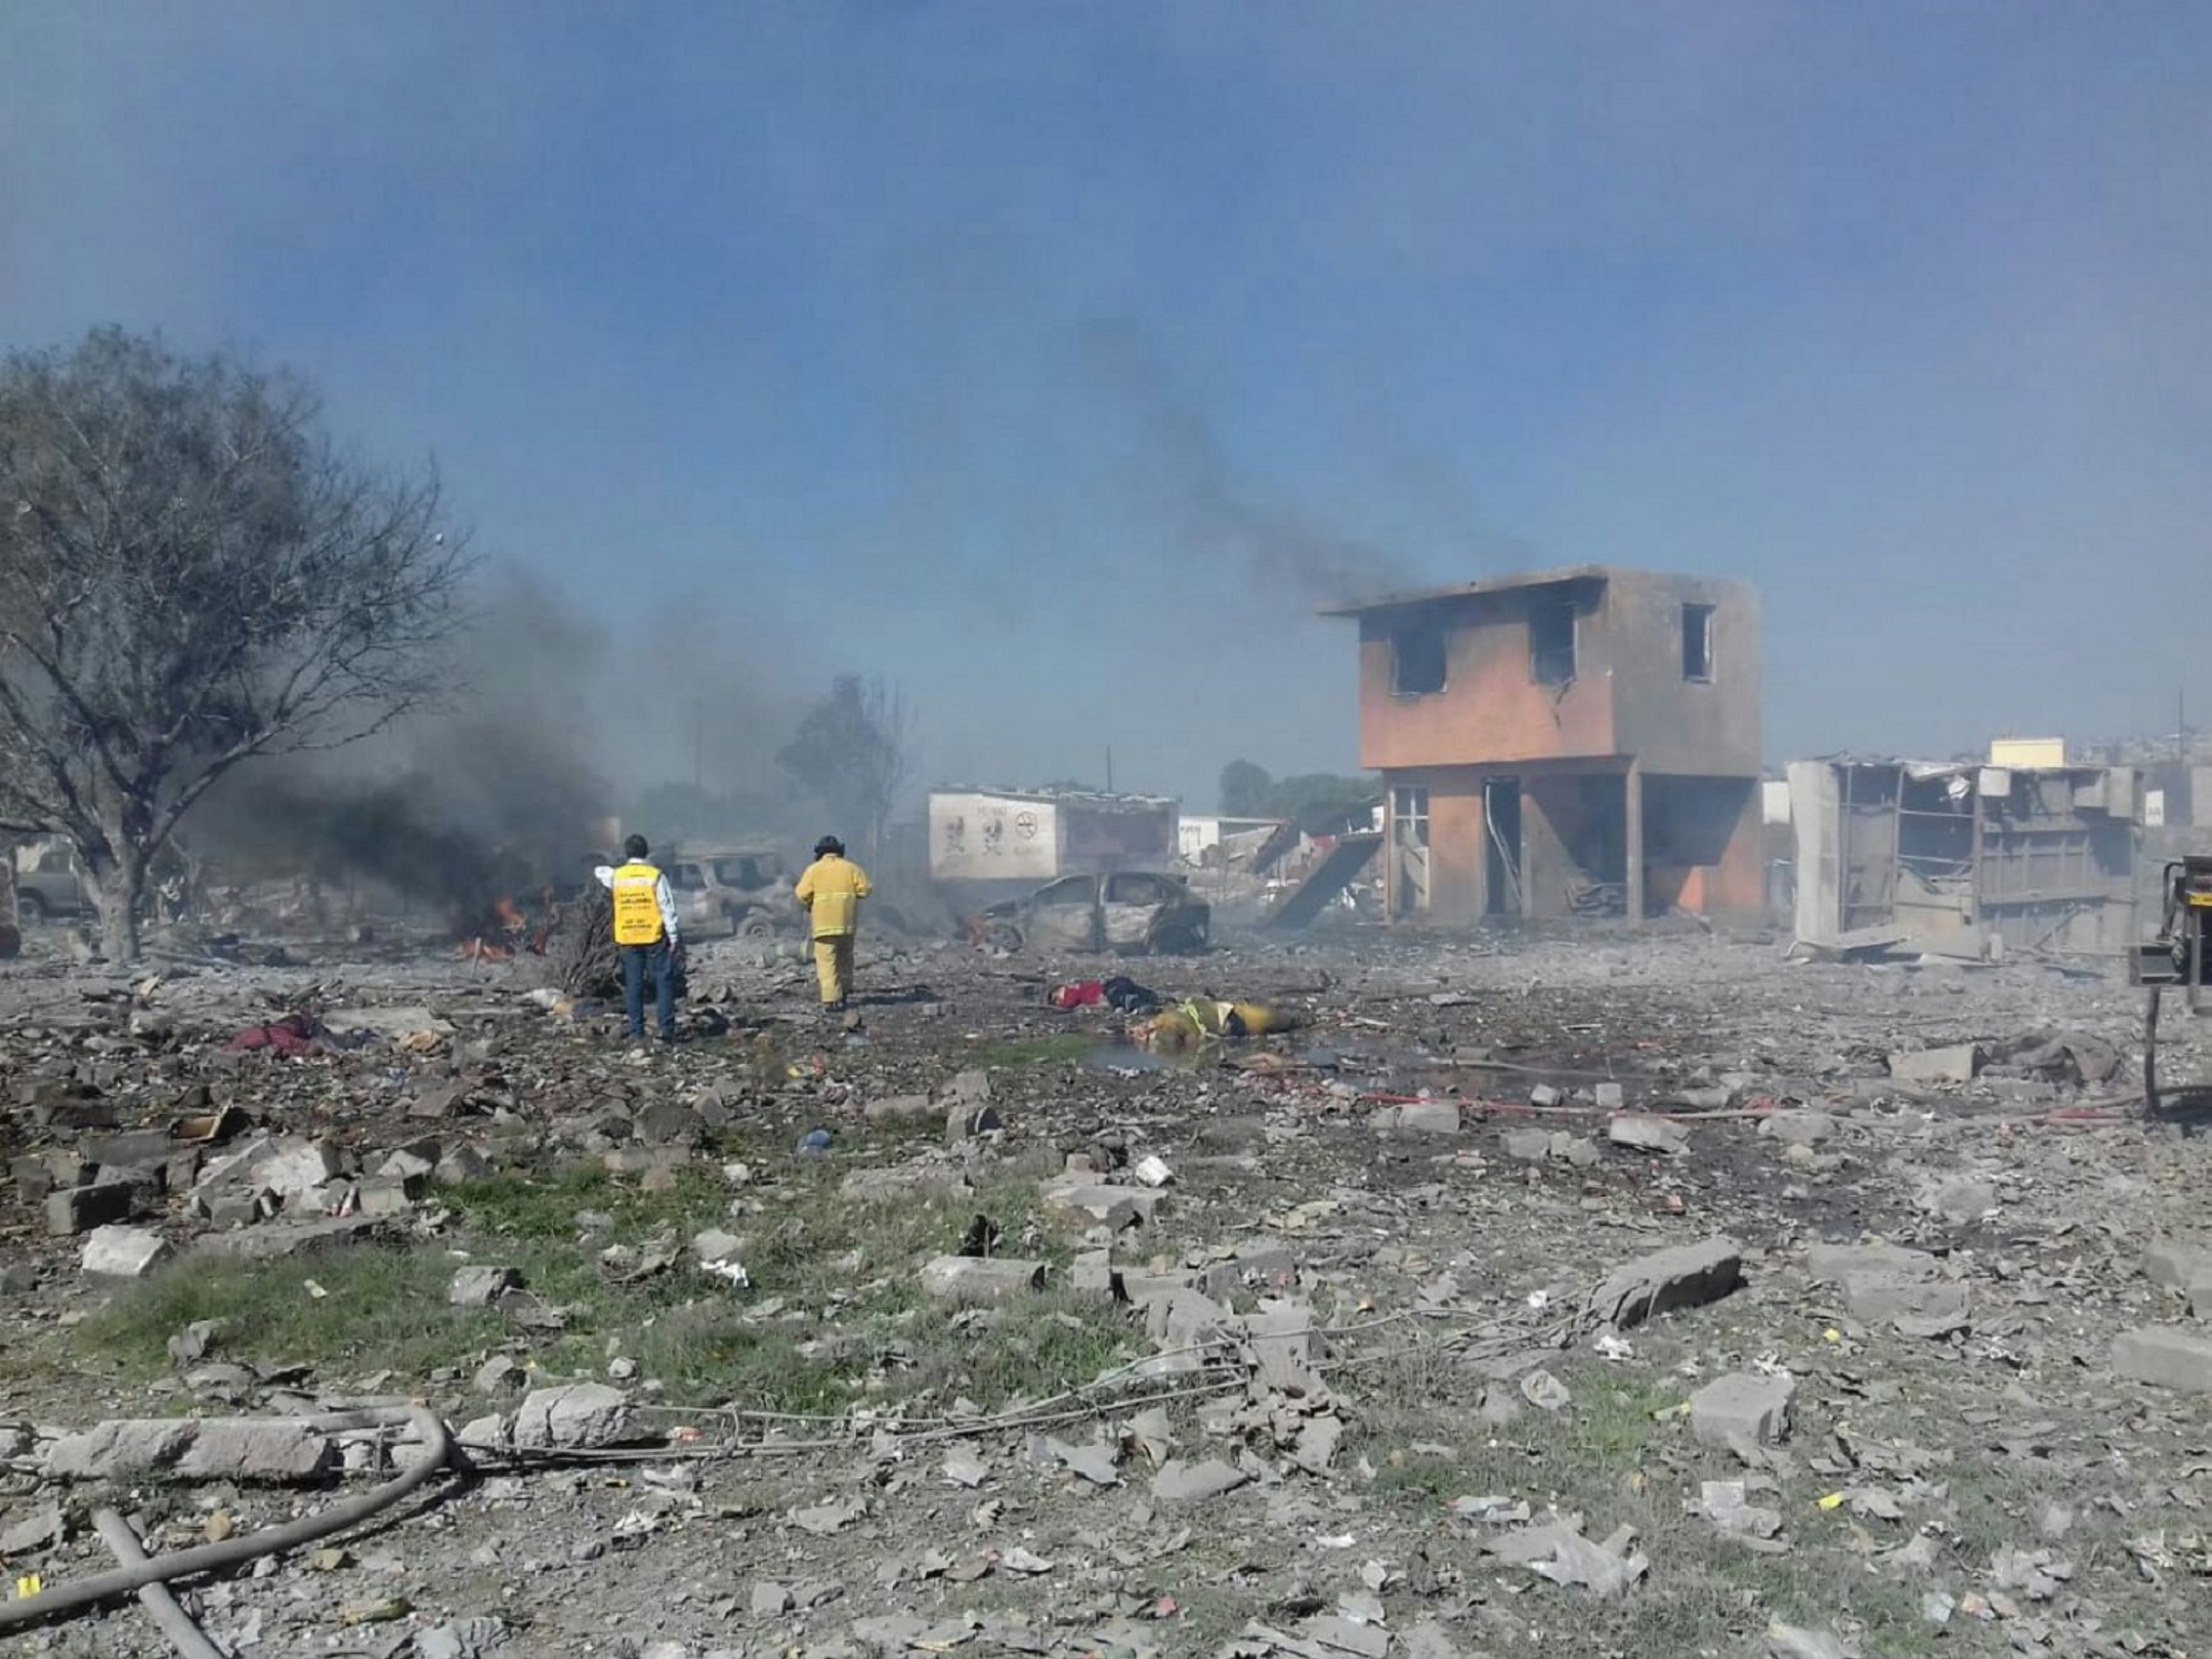 13 de 54 heridos por explosiones en Tultepec salen del hospital